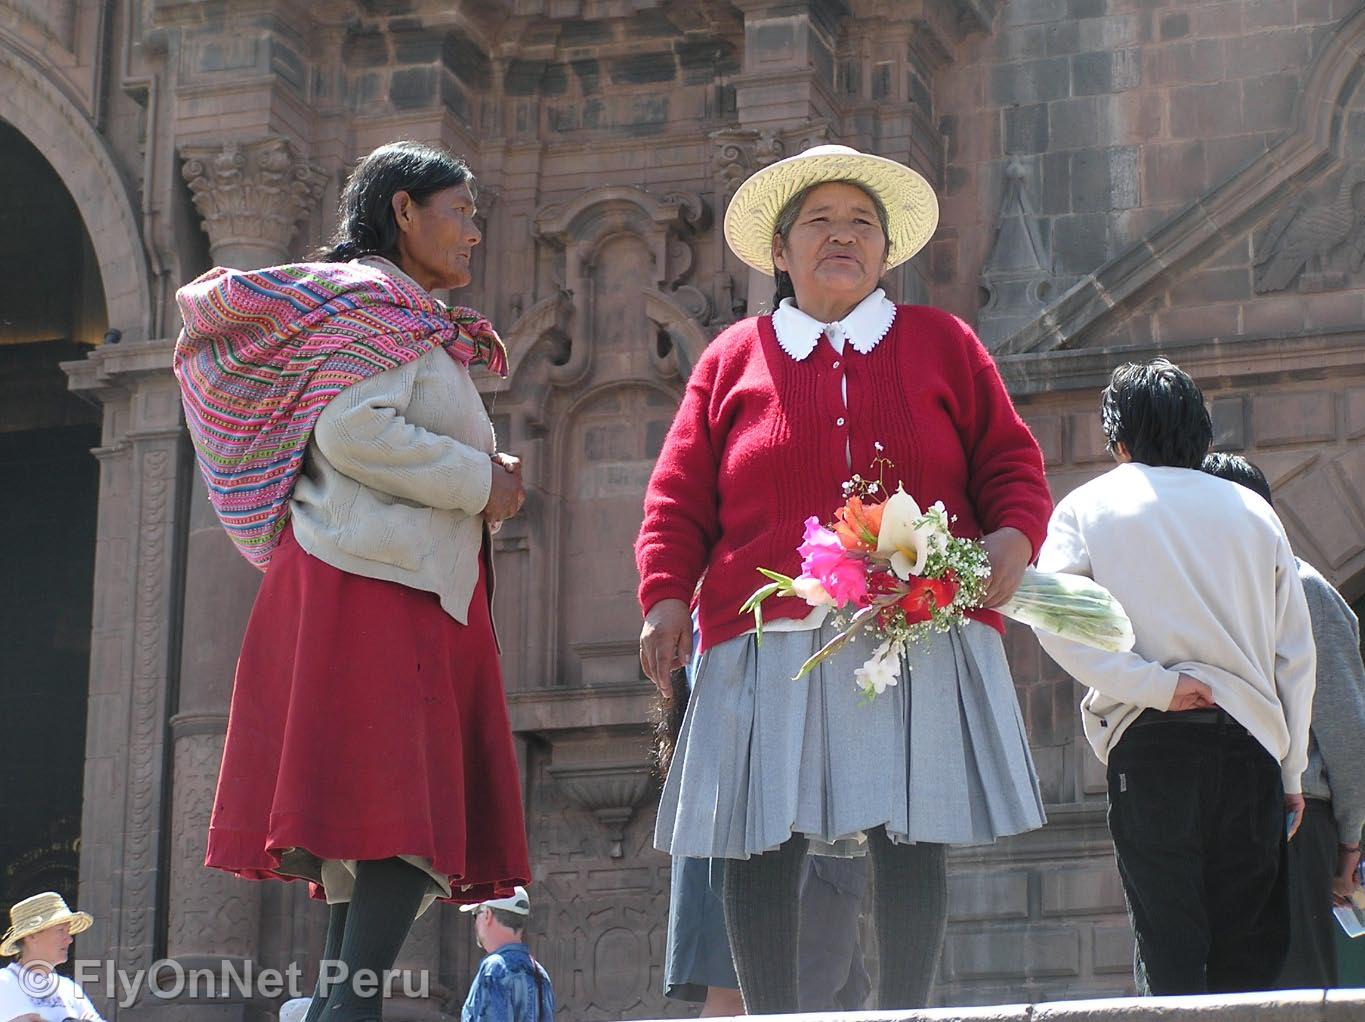 Álbum de fotos: Mujeres de Cusco, Cuzco